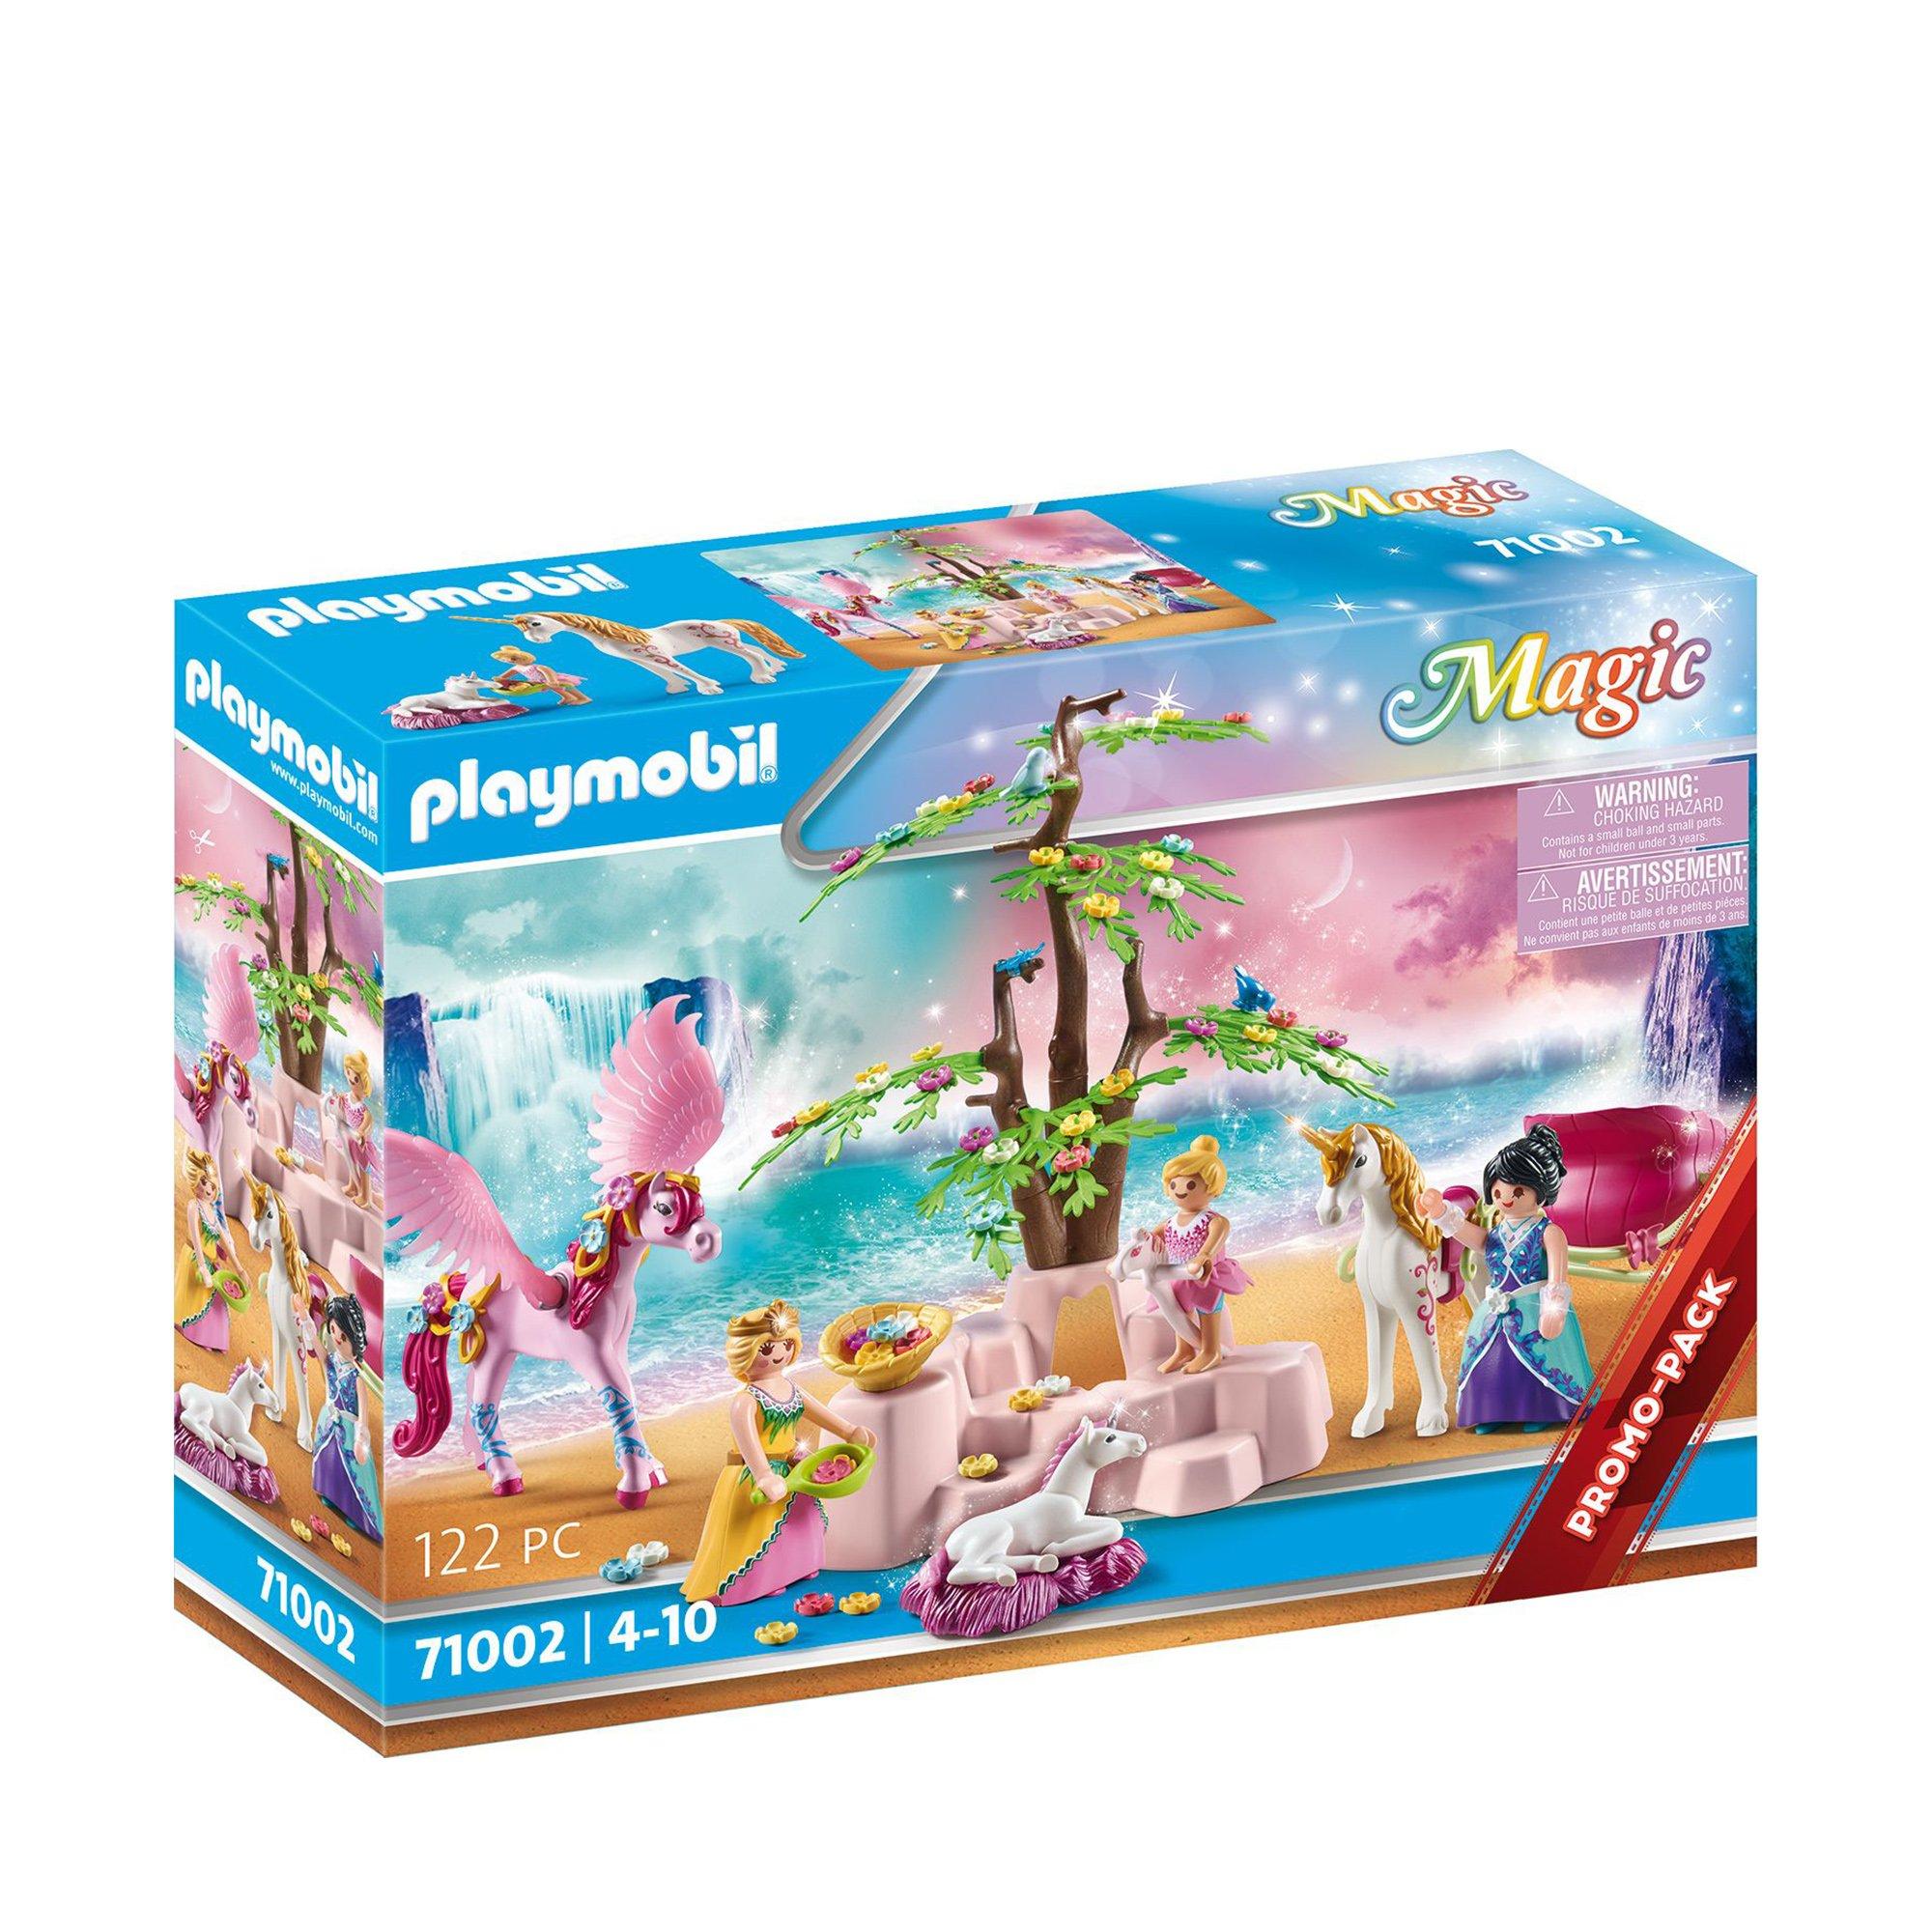 Image of Playmobil 71002 Einhornkutsche mit Pegasus